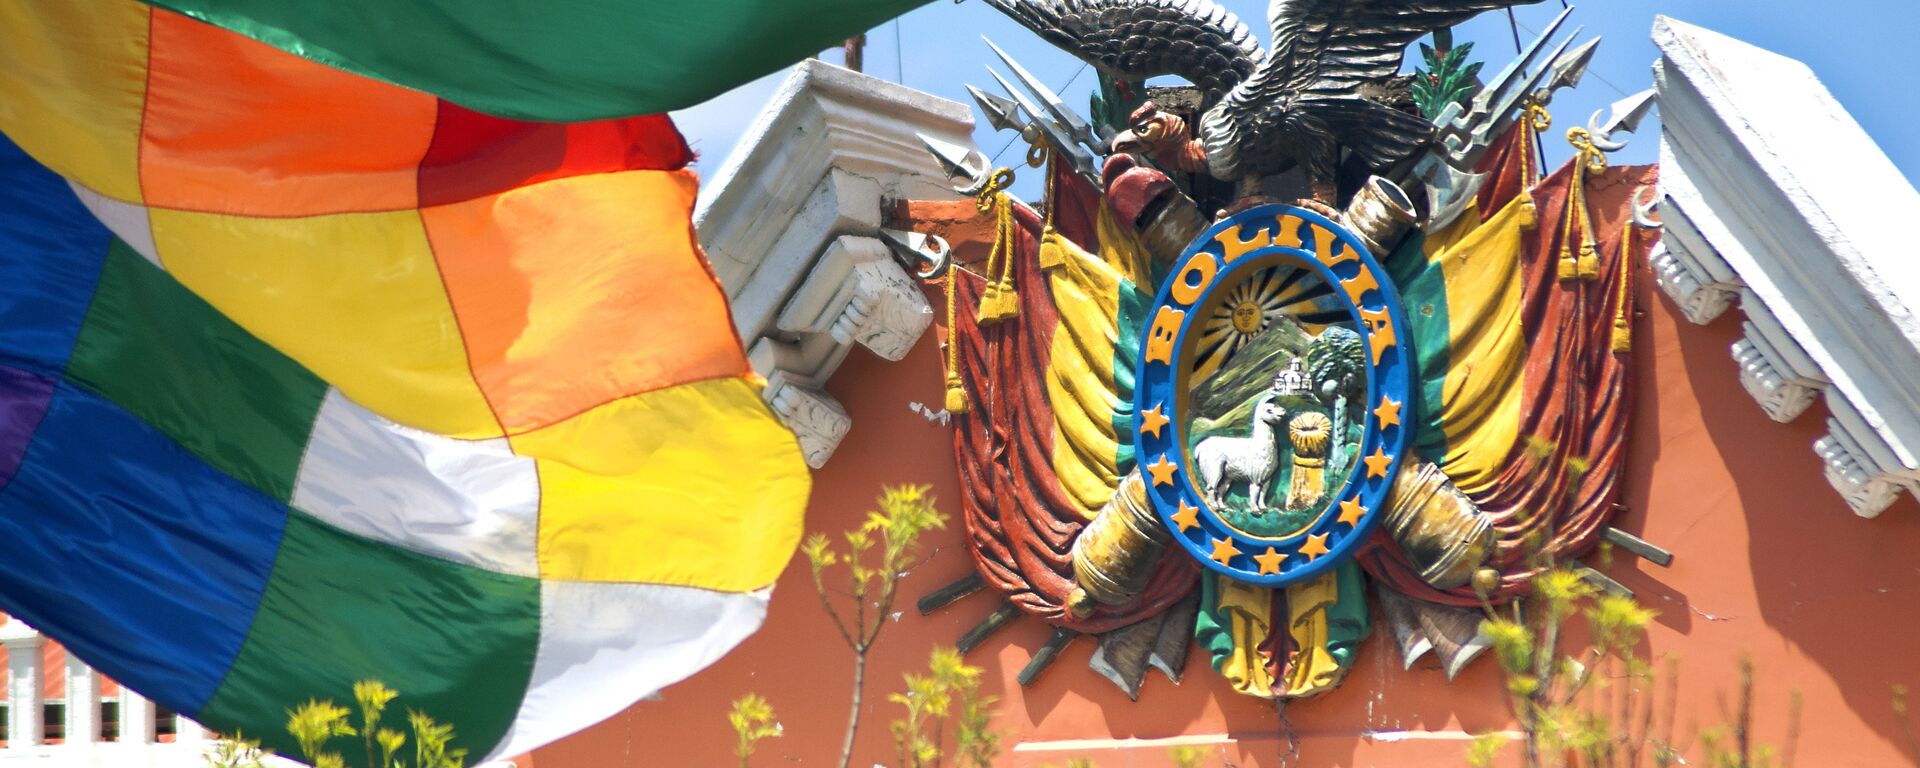 Escudo de Bolivia en el Palacio de Gobierno - Sputnik Mundo, 1920, 04.11.2021